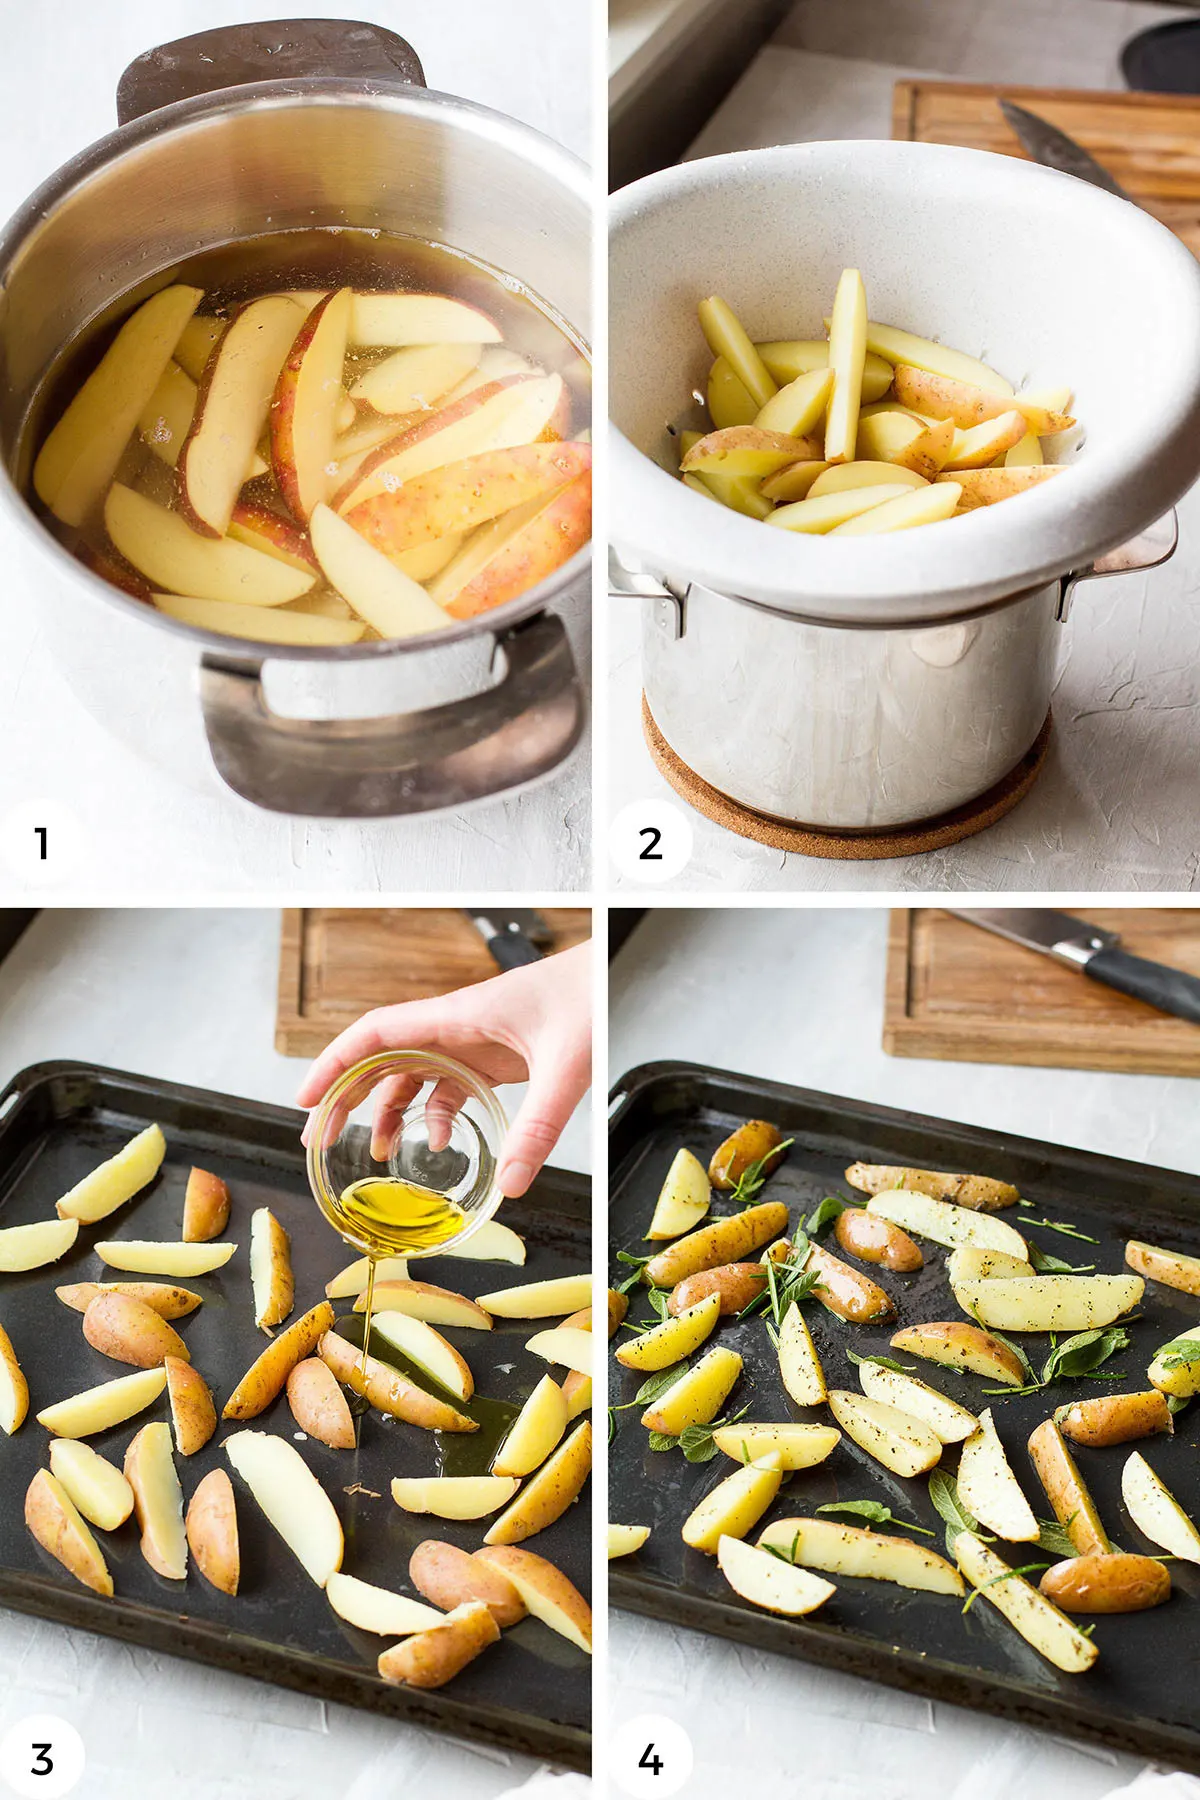 Steps to make crispy roasted potatoes.